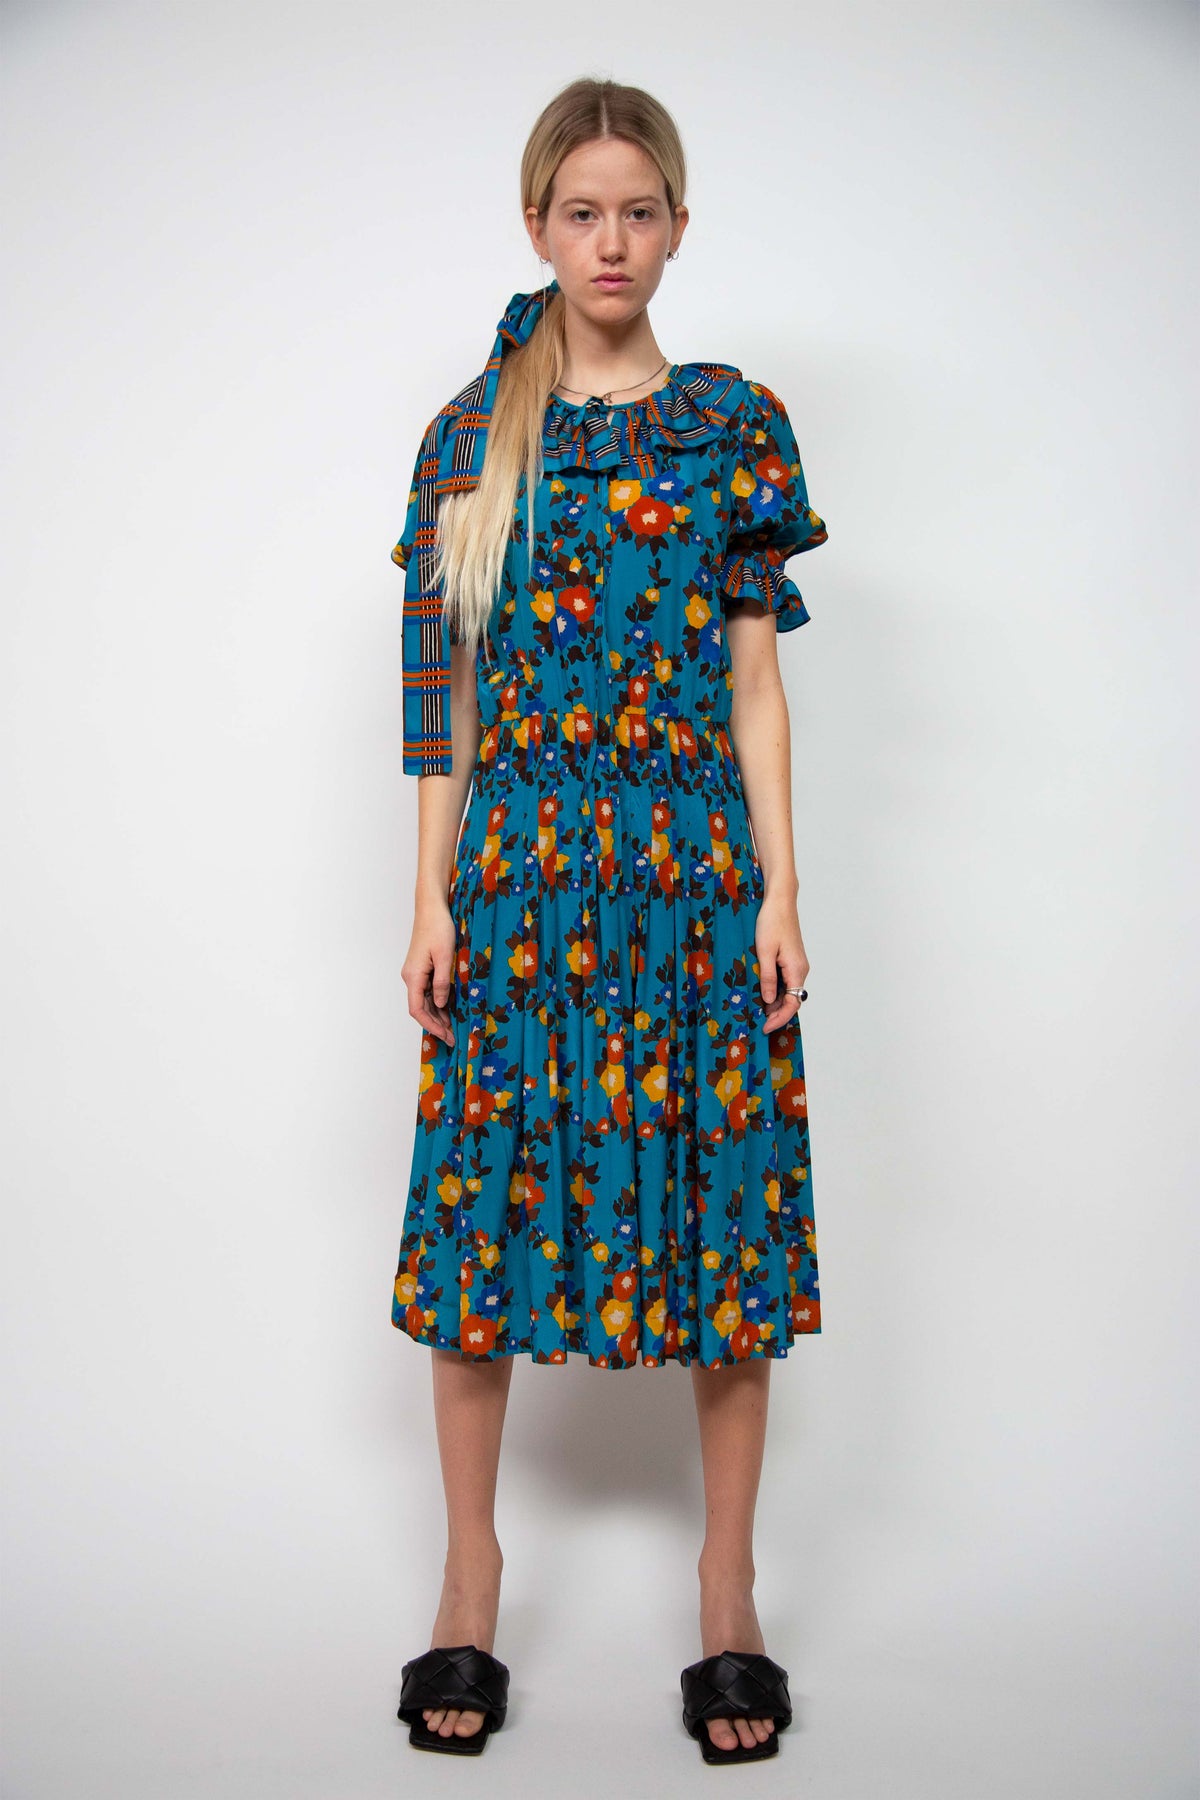 Yves Saint Laurent floral dress